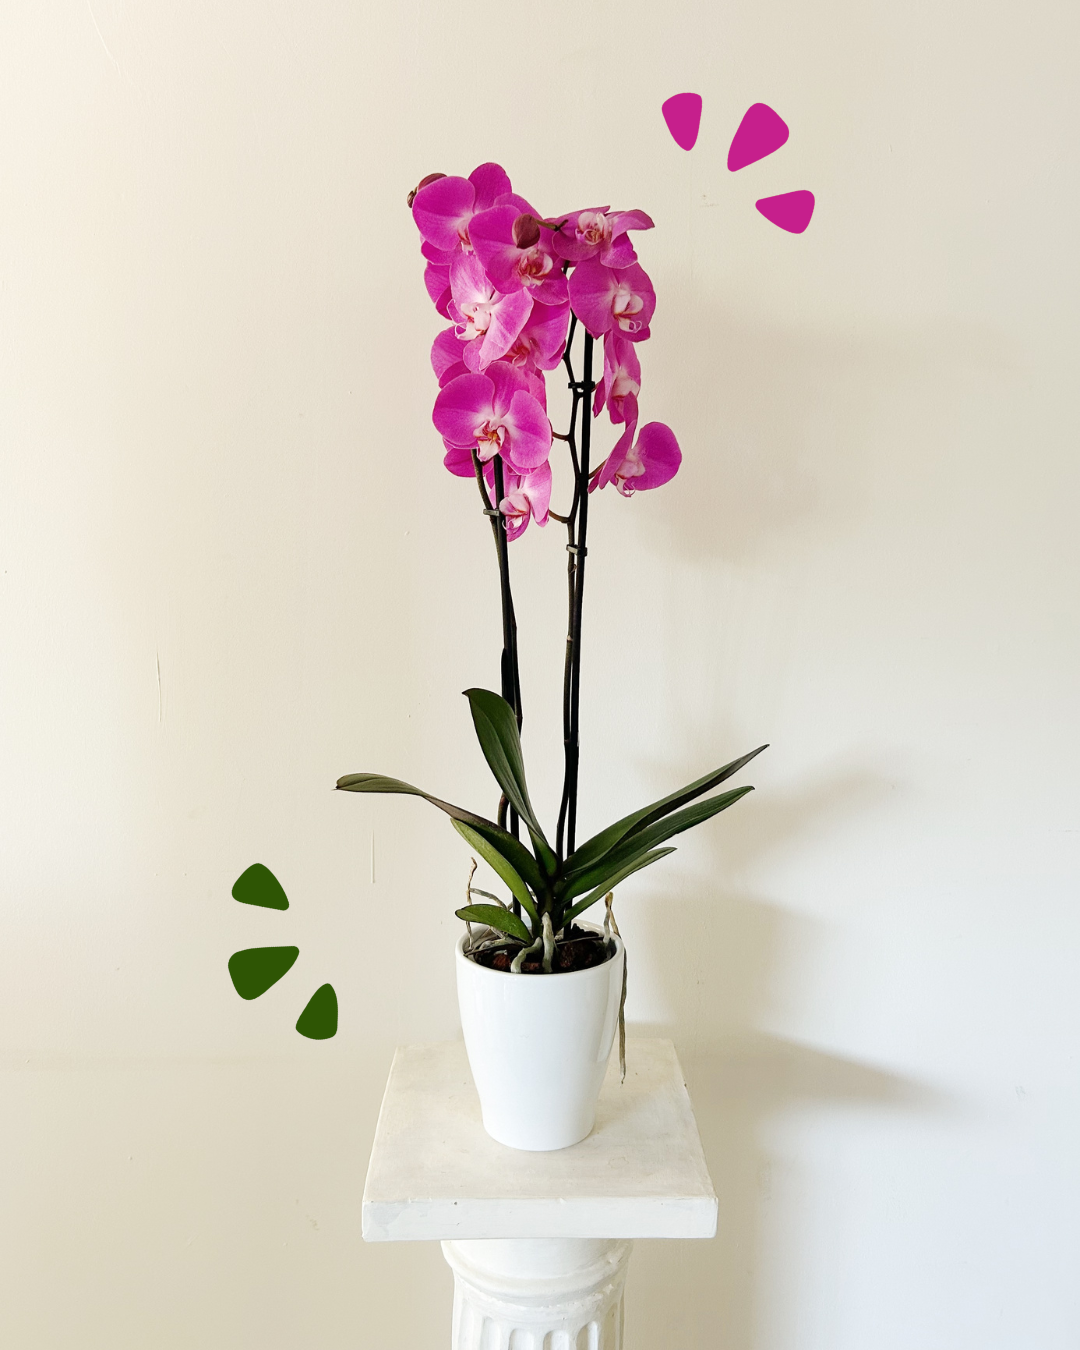 Orquídea Morada/Fucsia "Bali"